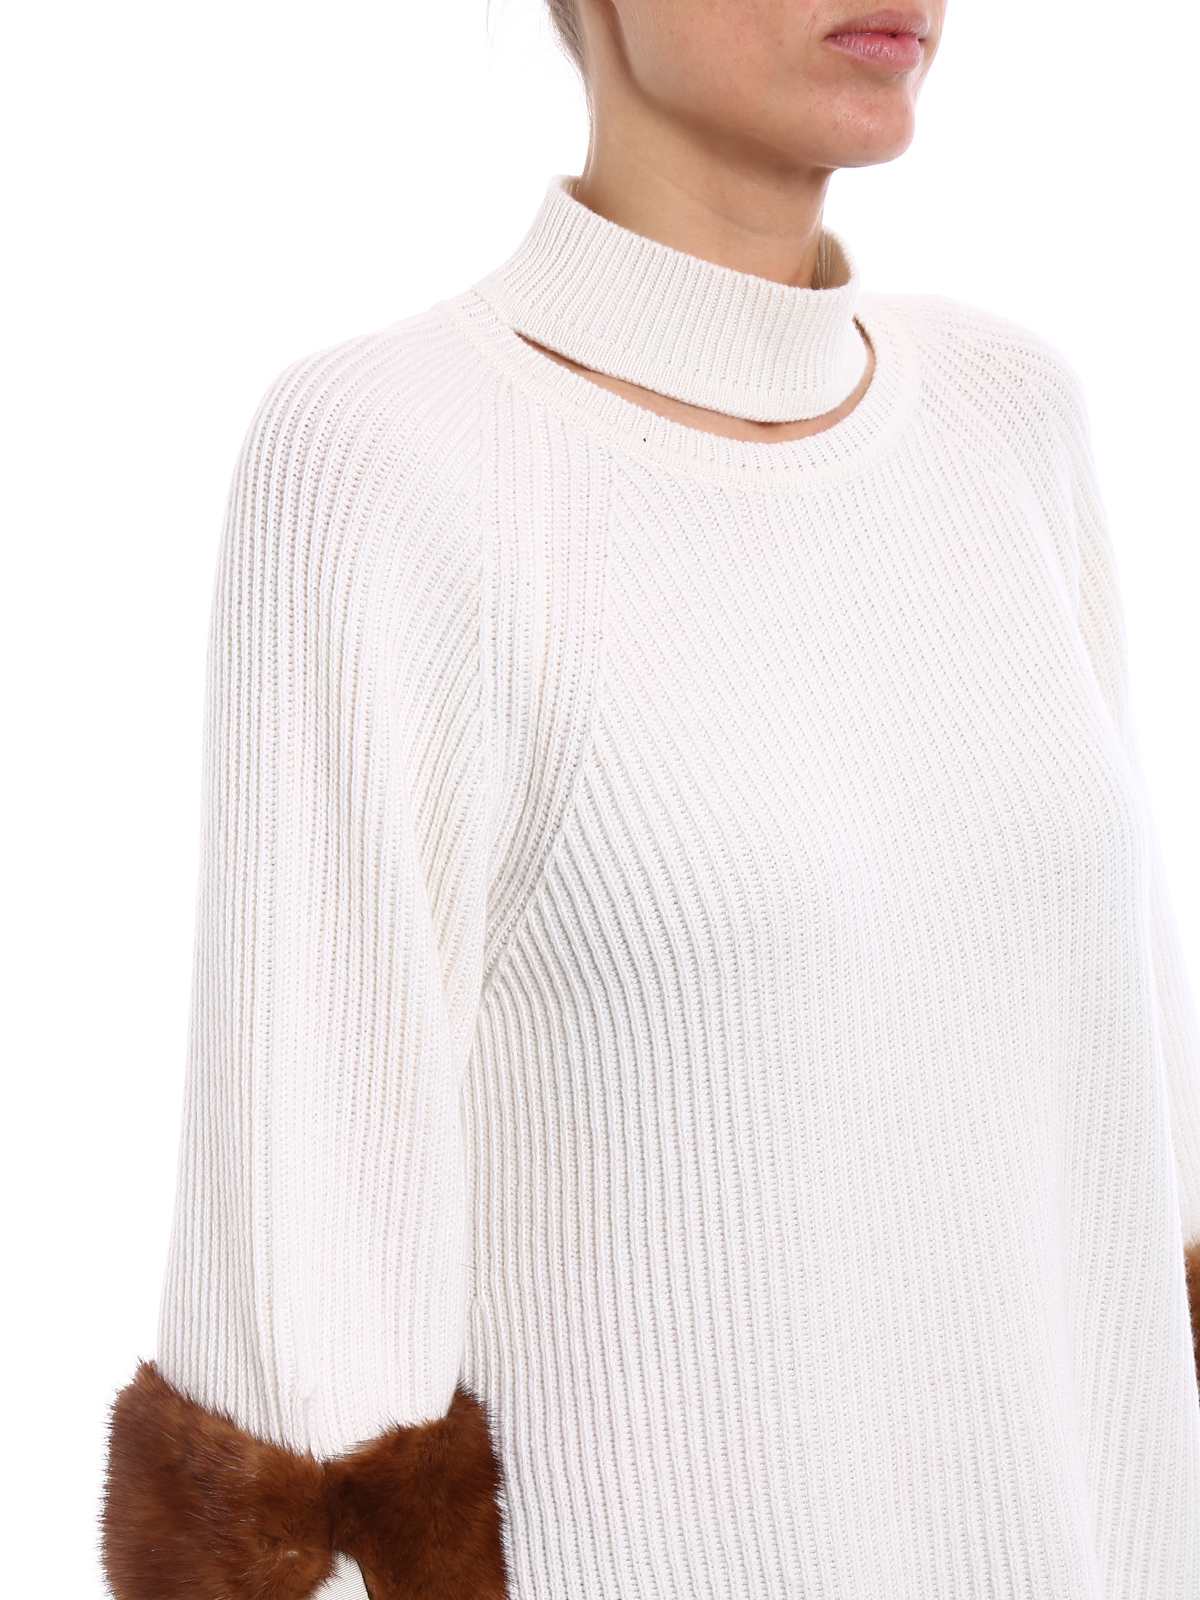 Turtlenecks & Polo necks Fendi - Mink fur cuff cashmere sweater -  FZY545A1DEZNM